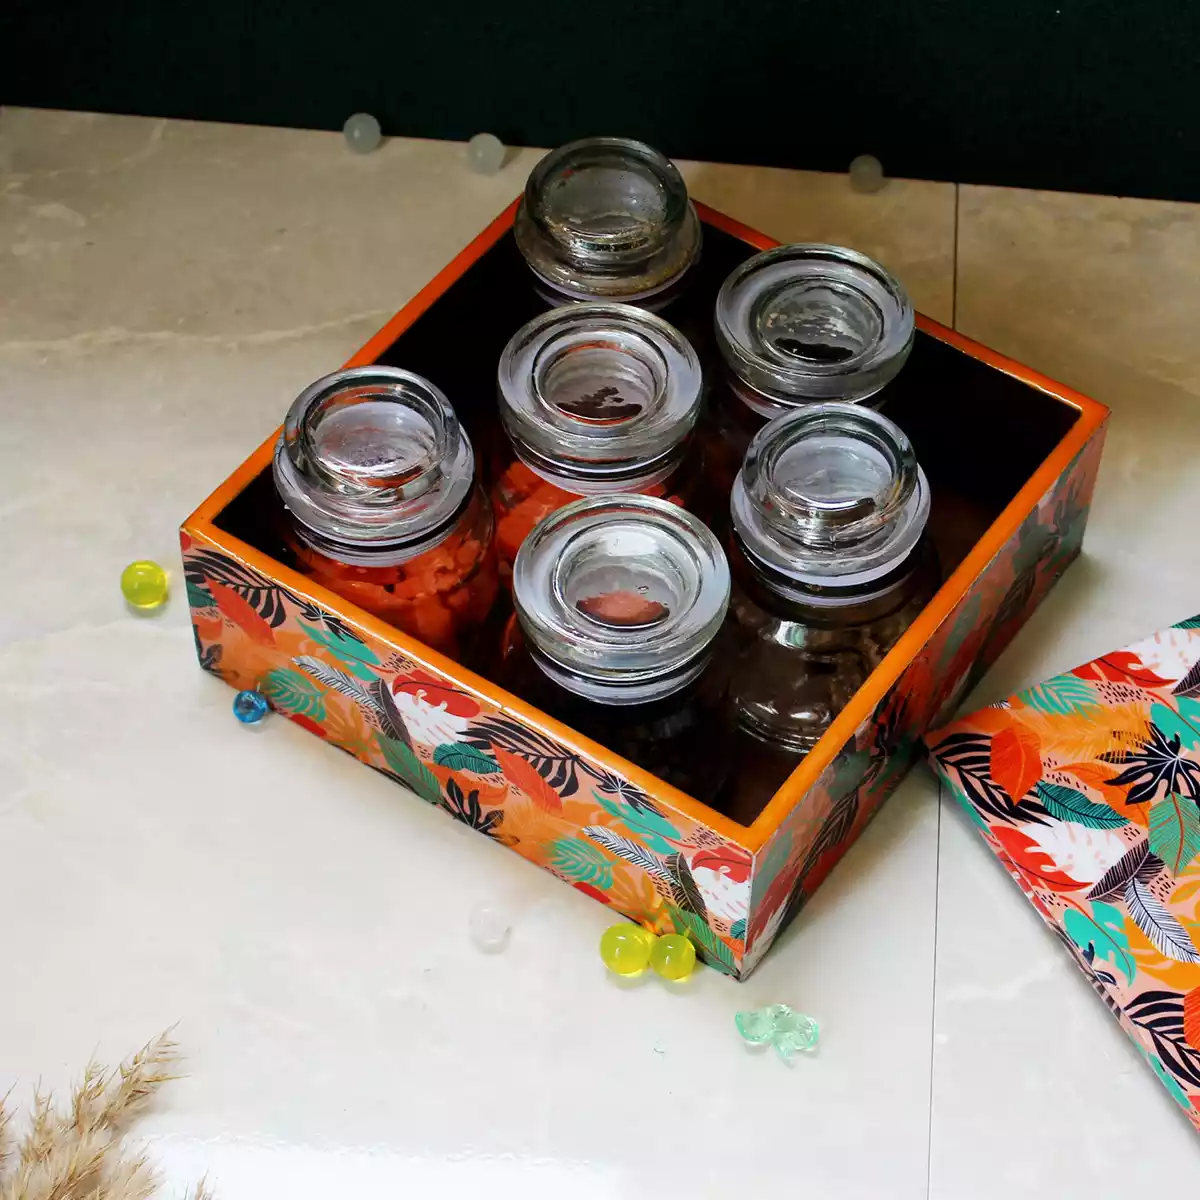 Tangerine Twist- Organizer/Box